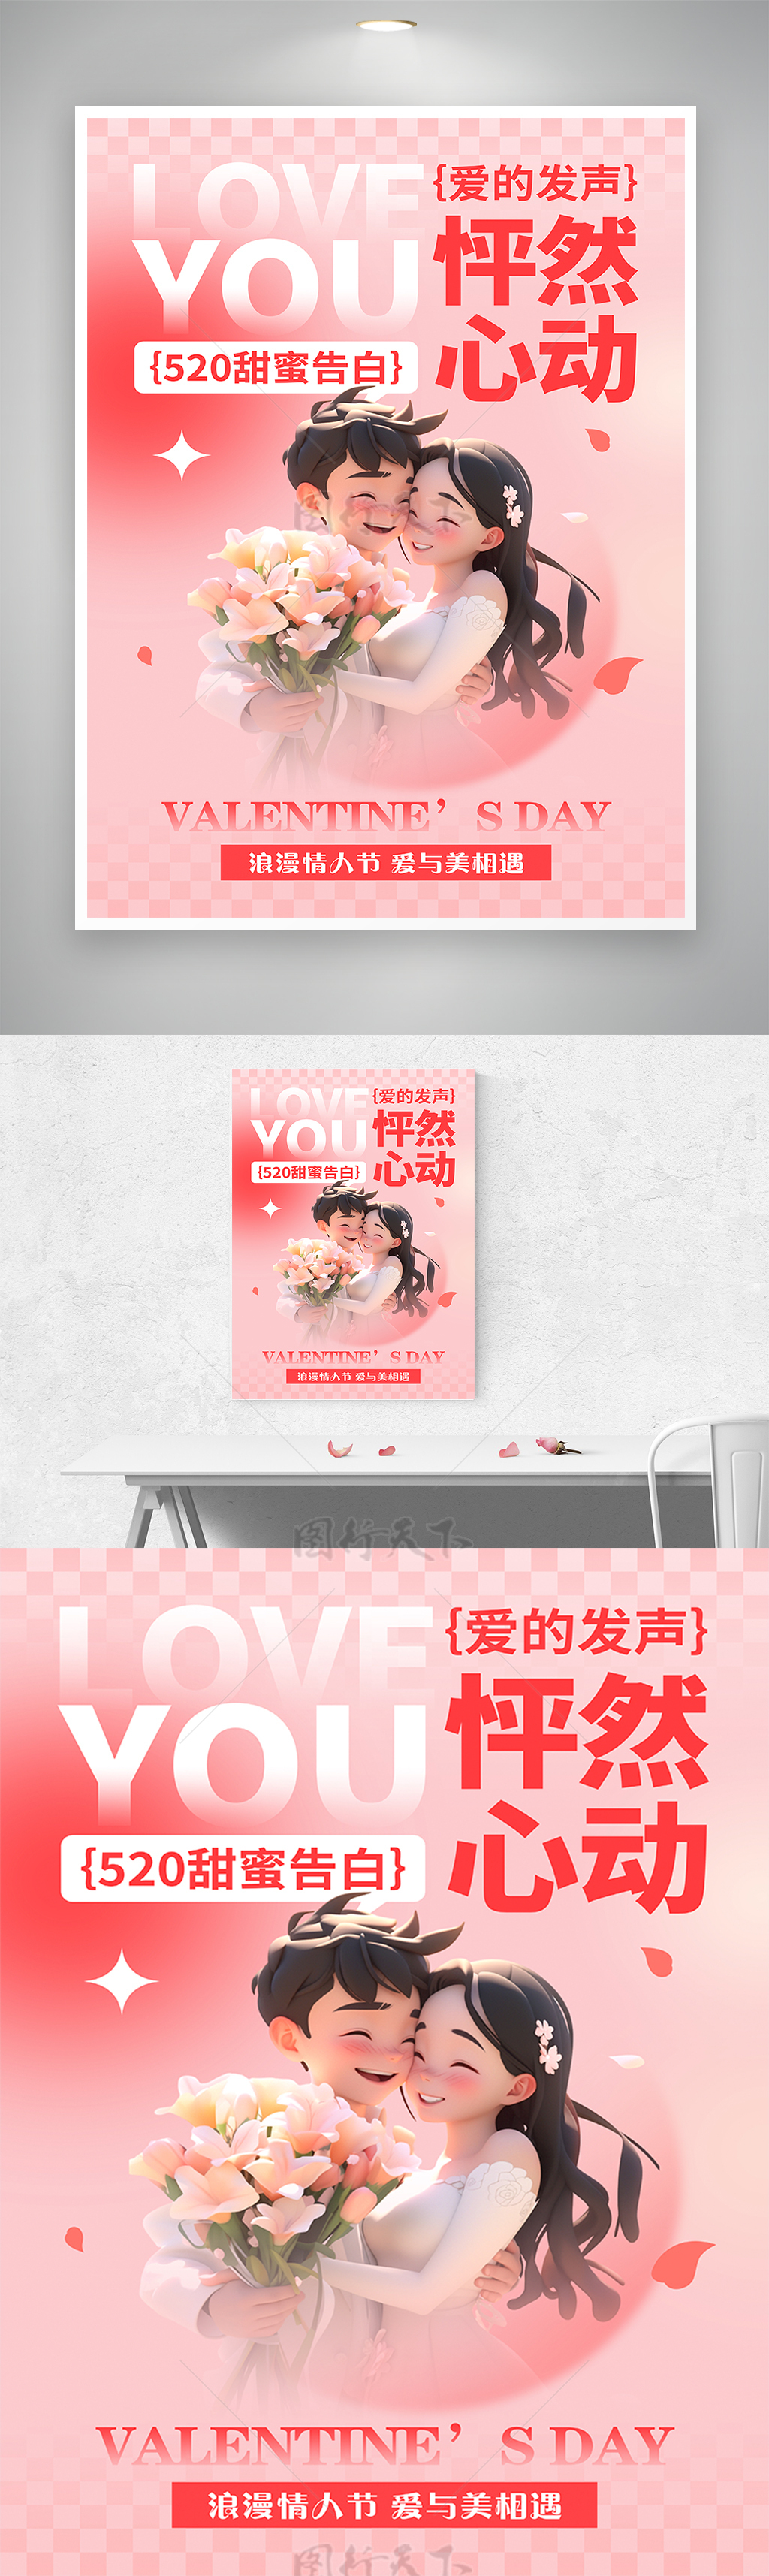 520甜蜜告白浪漫情人节节日宣传海报